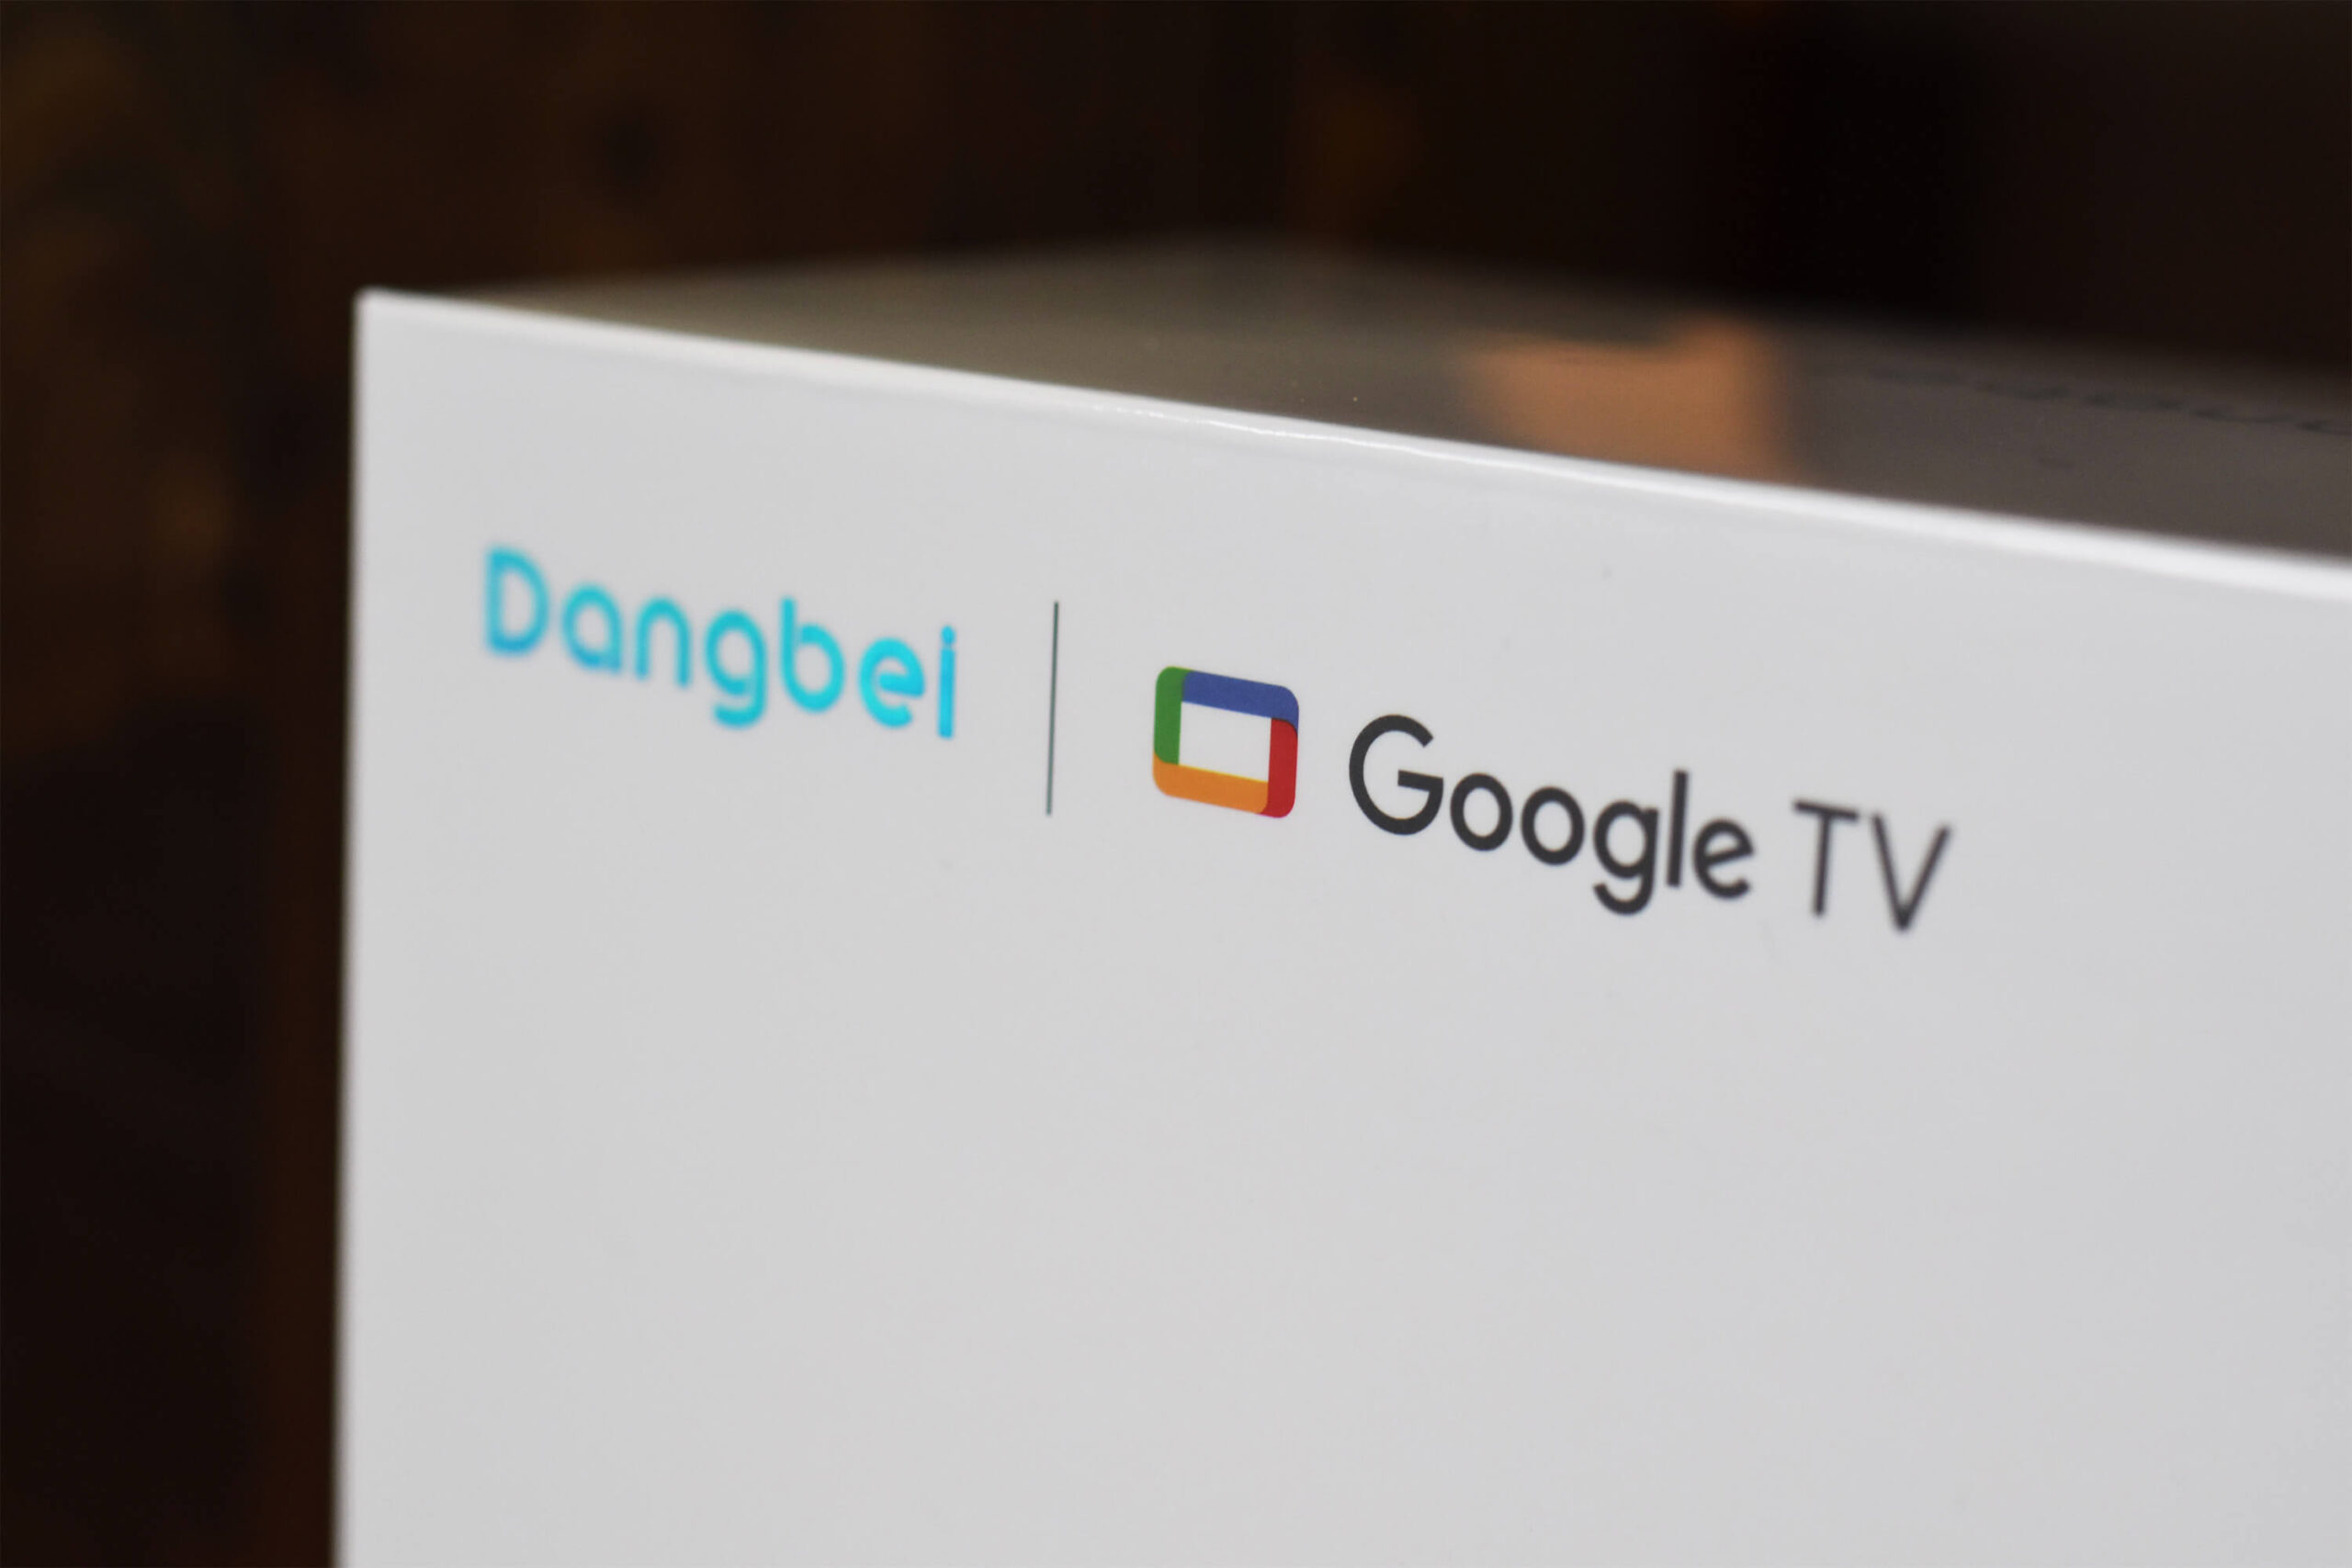 DangbeiのロゴとGoogleTV対応のロゴ